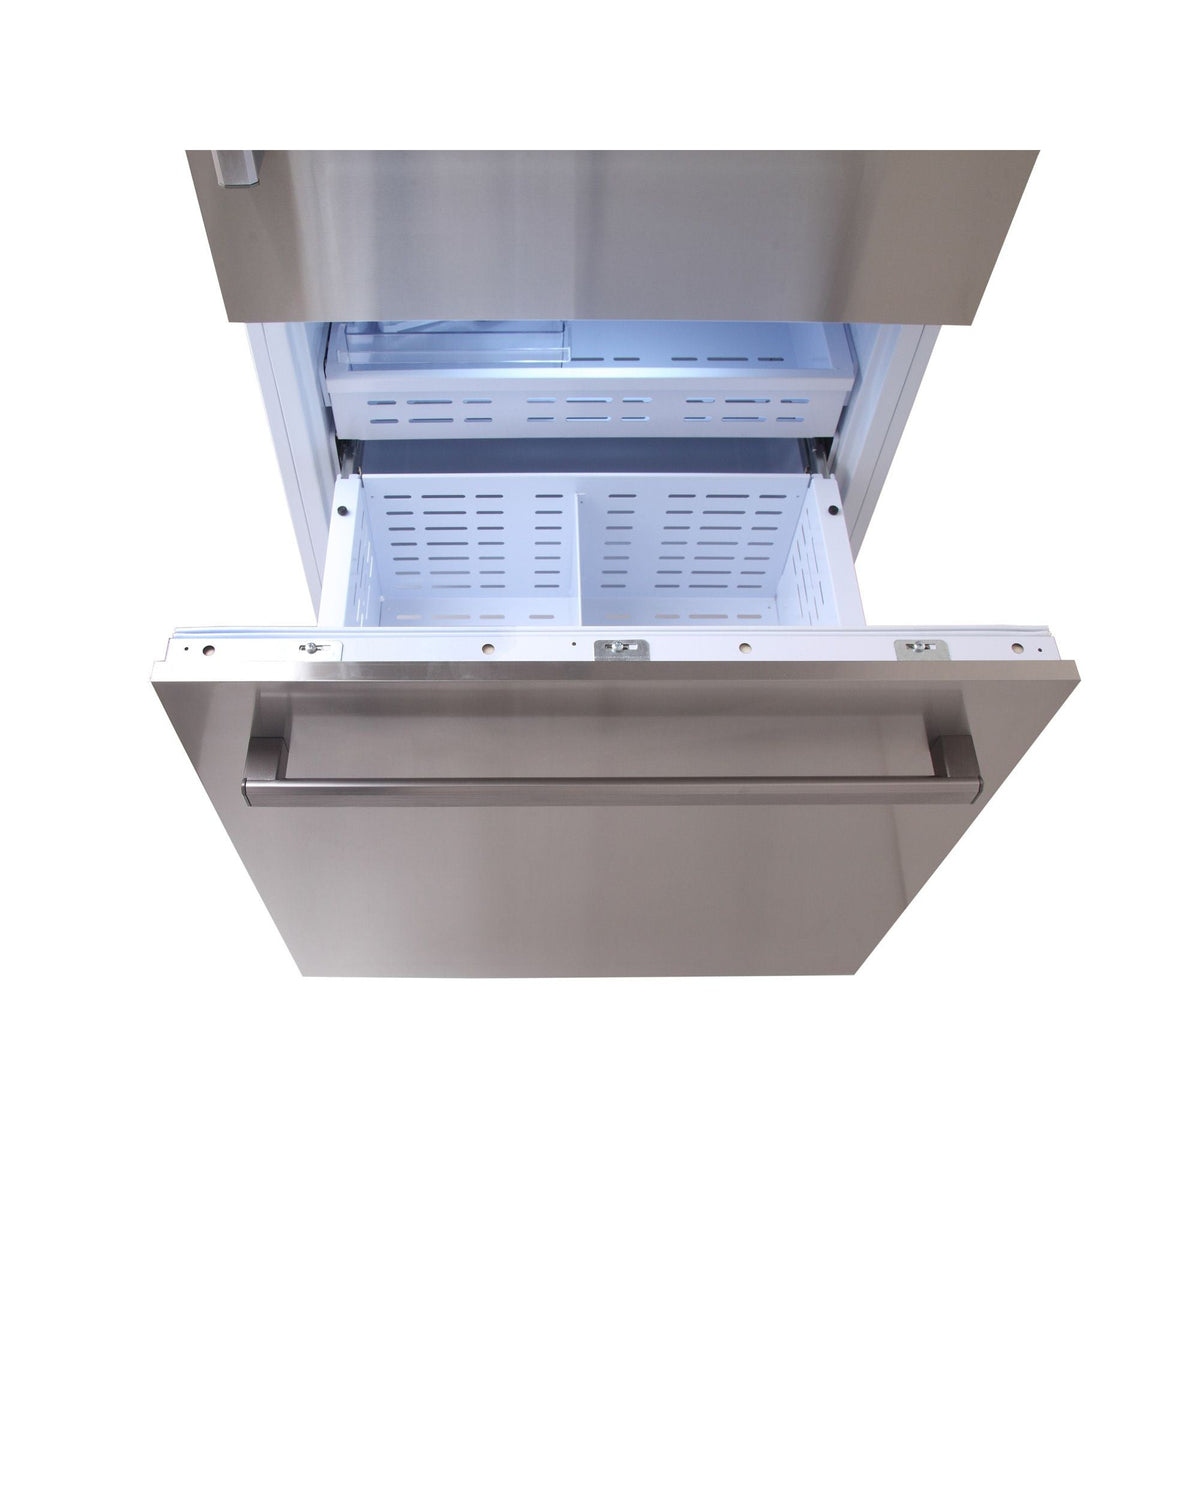 KUCHT KR300SD 30” Built-In, Counter Depth, Panel Ready, Single Door Refrigerator